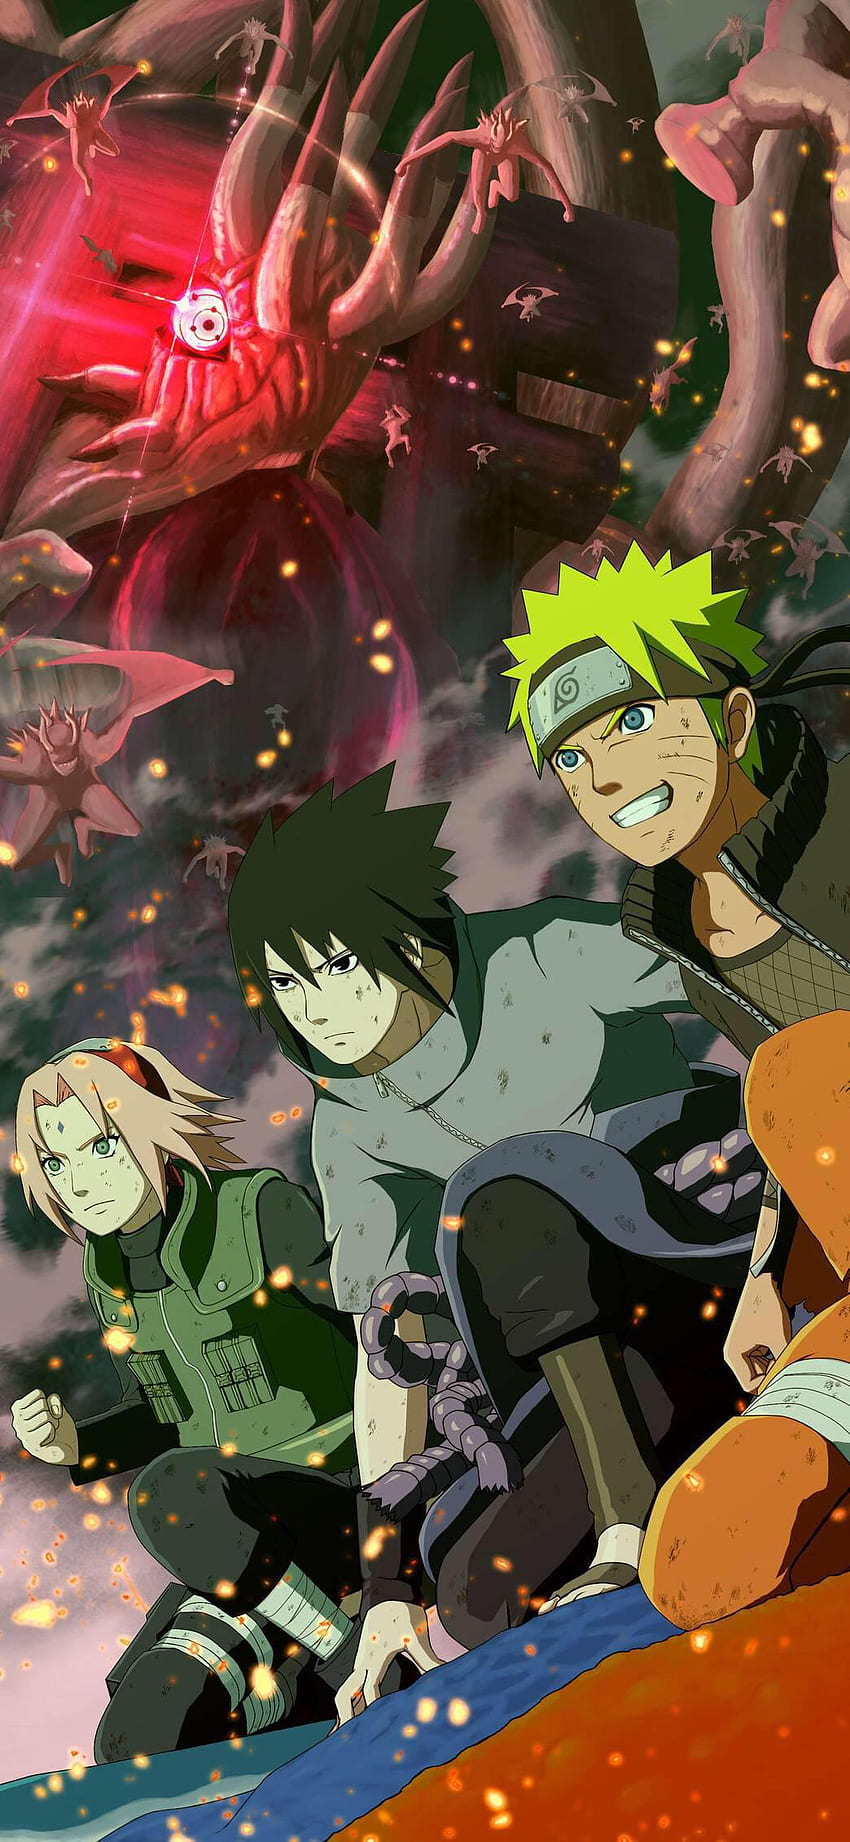 Bộ Anime Naruto đã đưa chúng ta đến gần với Team 7 - một đội pháp thuật trẻ tuổi, sẵn sàng đón nhận thử thách và chiến đấu cho tương lai của làng. Bạn sẽ không muốn bỏ lỡ những thước phim đầy màu sắc, hấp dẫn về hành trình phiêu lưu của Naruto, Sasuke và Sakura.